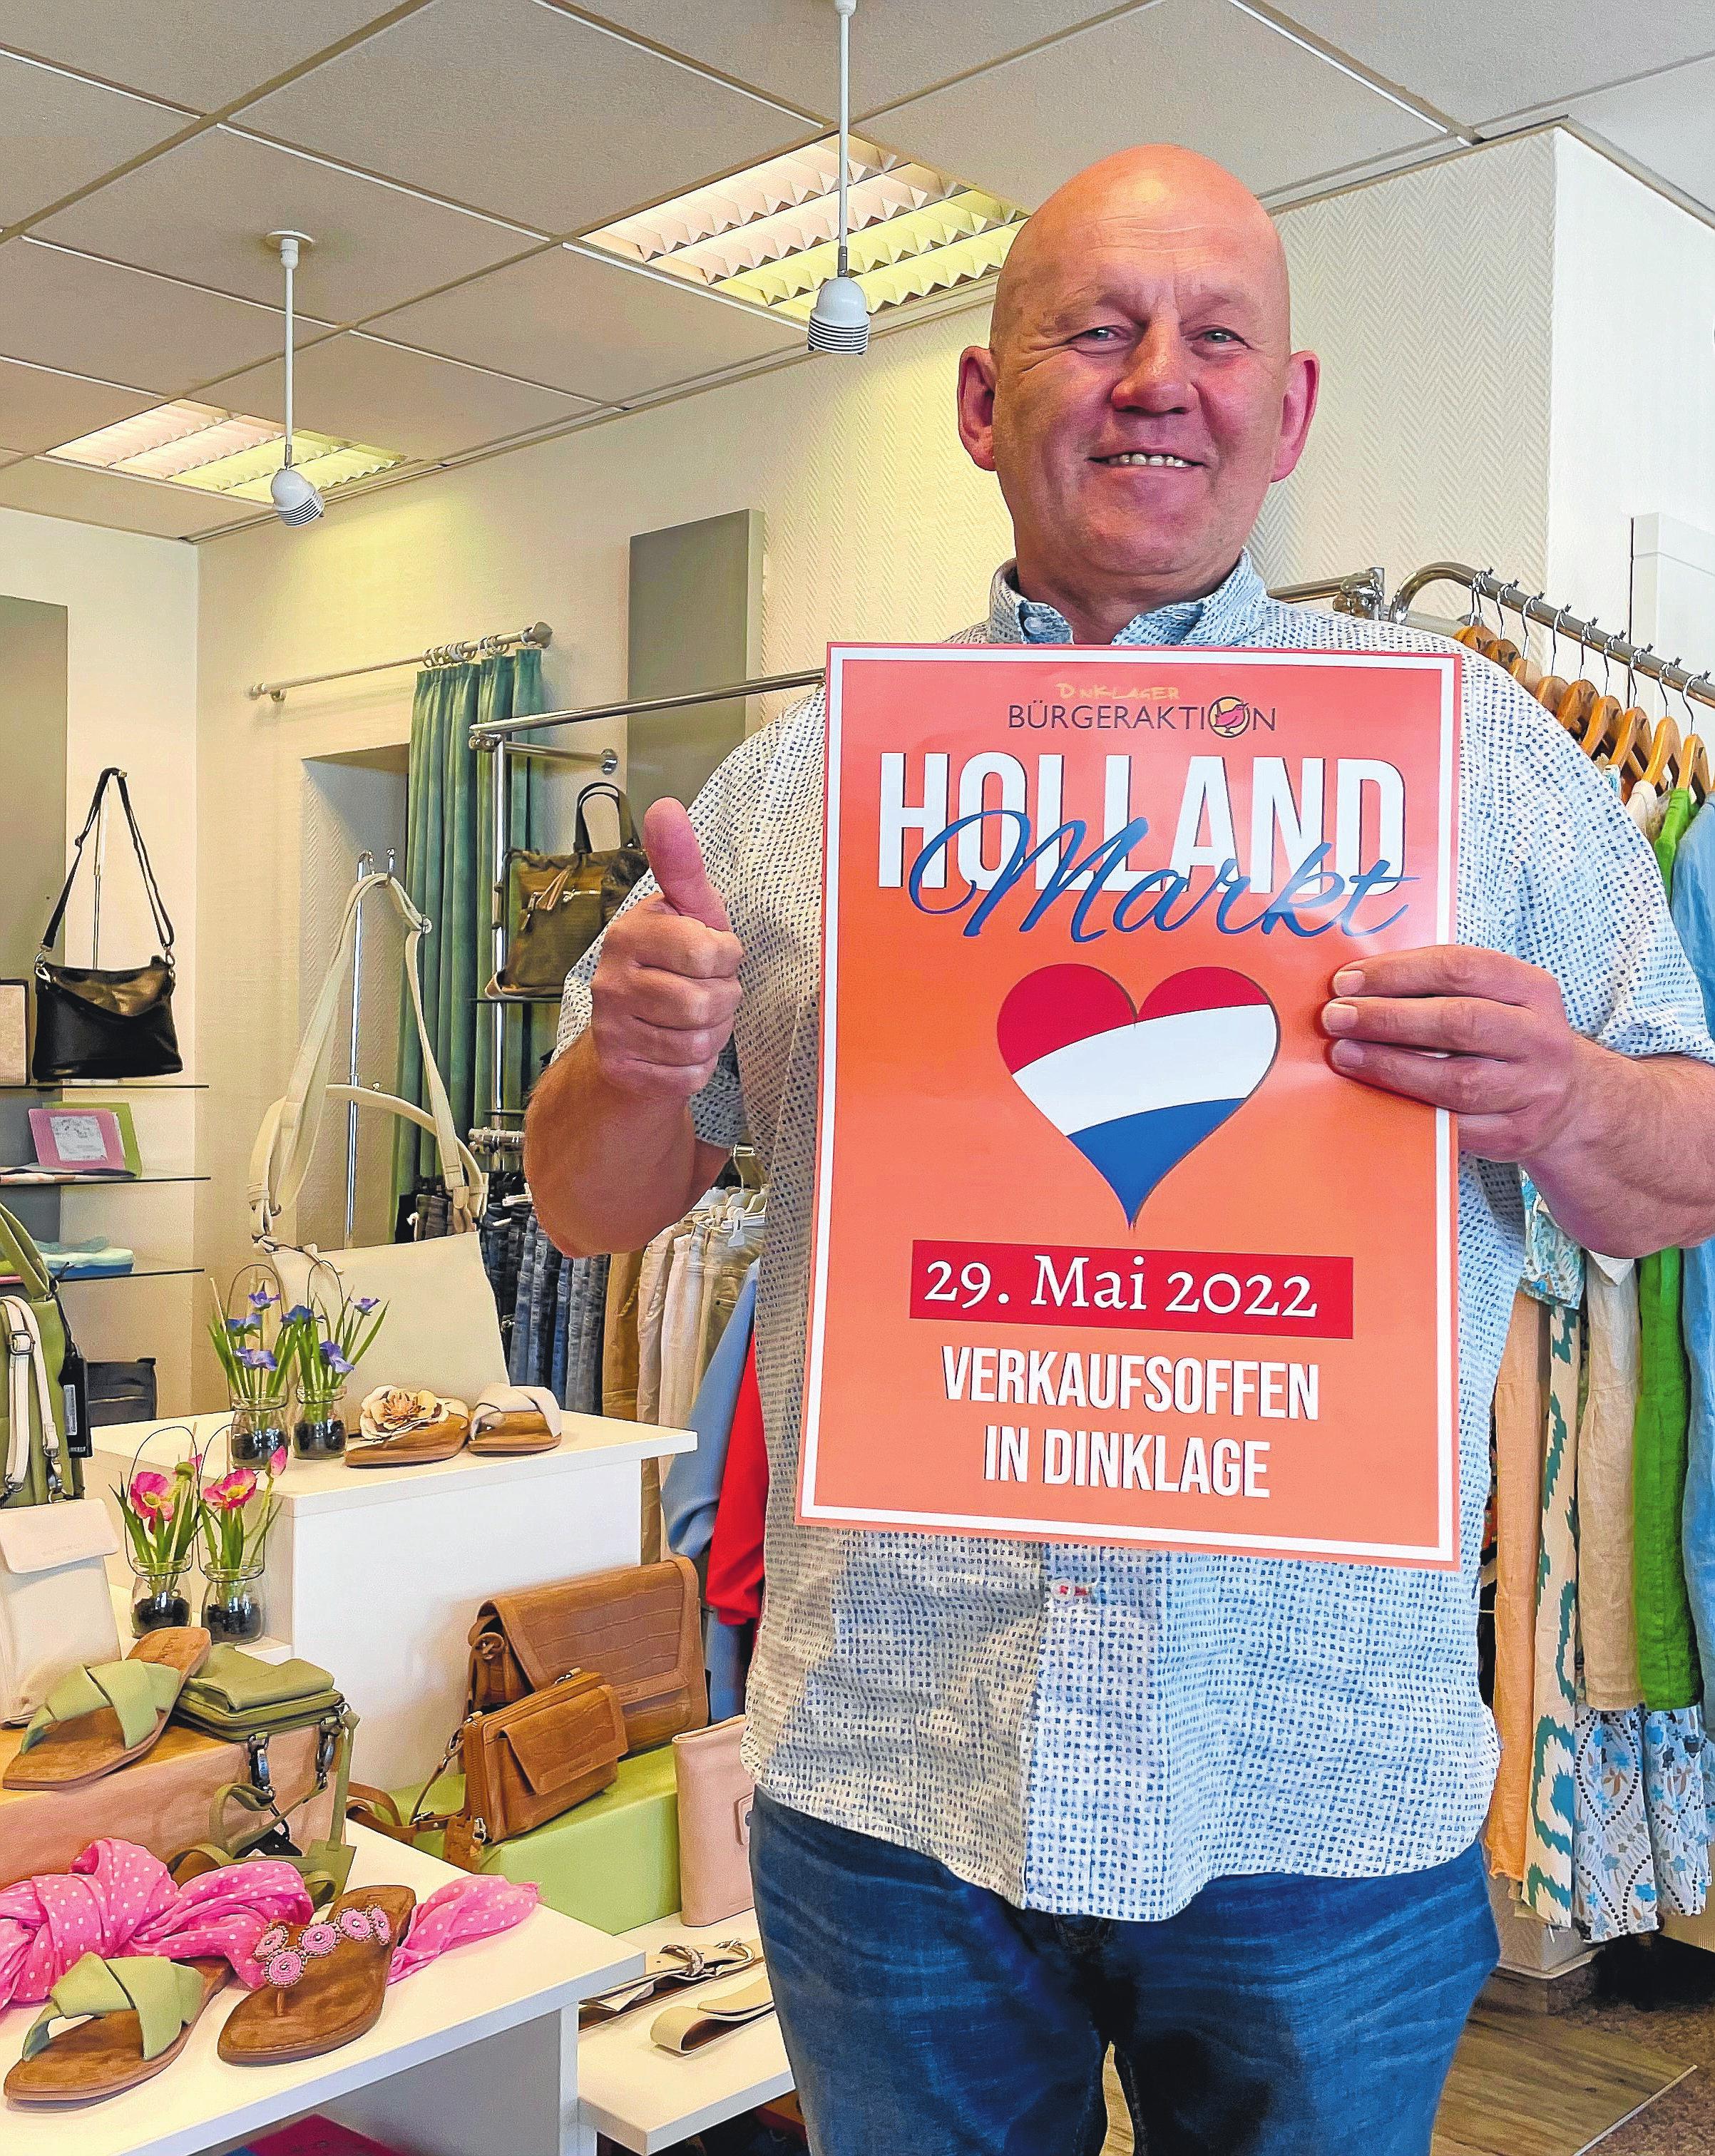 Daumen hoch für den Hollandmarkt: Martin Fortmann vom Schuhhaus Fortmann.Foto: Bartz